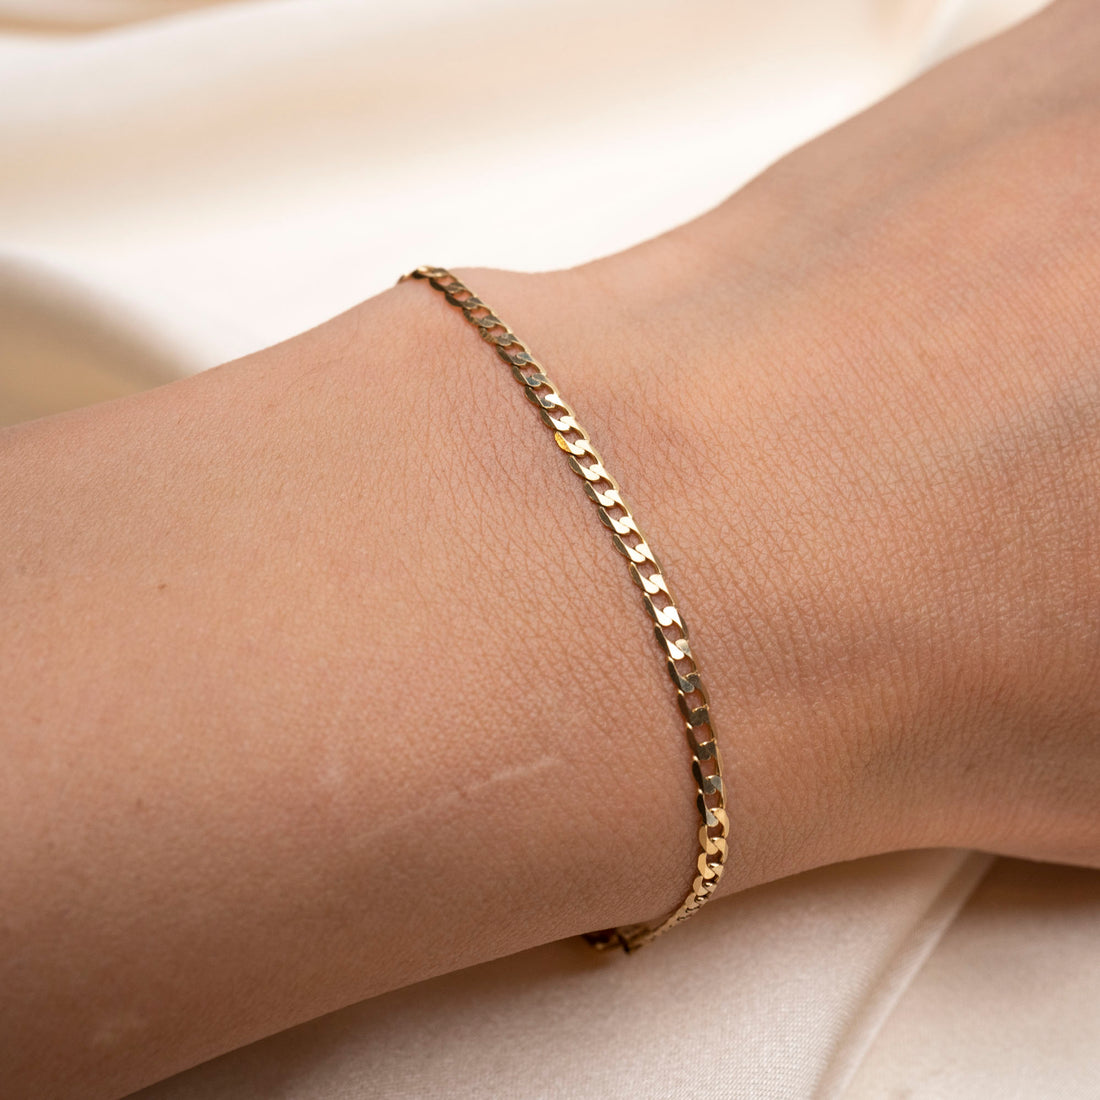 14k Gold Curb Link Bracelet